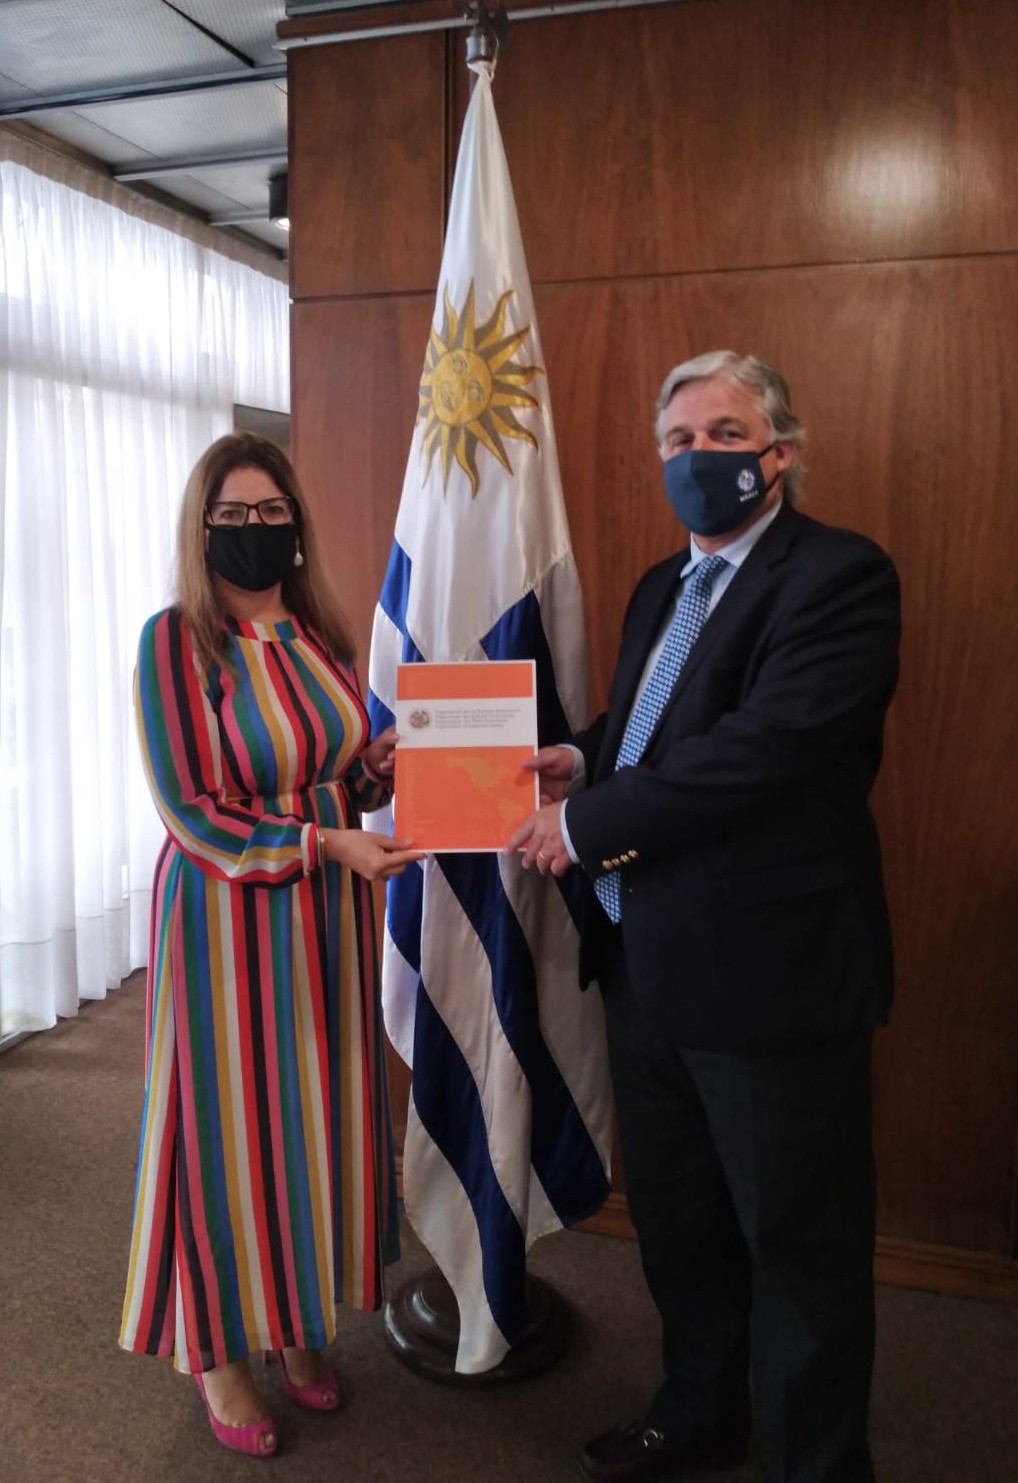 Presentación de la nota de acreditación de la Representante de OEA en Uruguay, Sra. Claudia Barrientos, al Canciller Francisco Bustillo(11 de febrero de 2021)